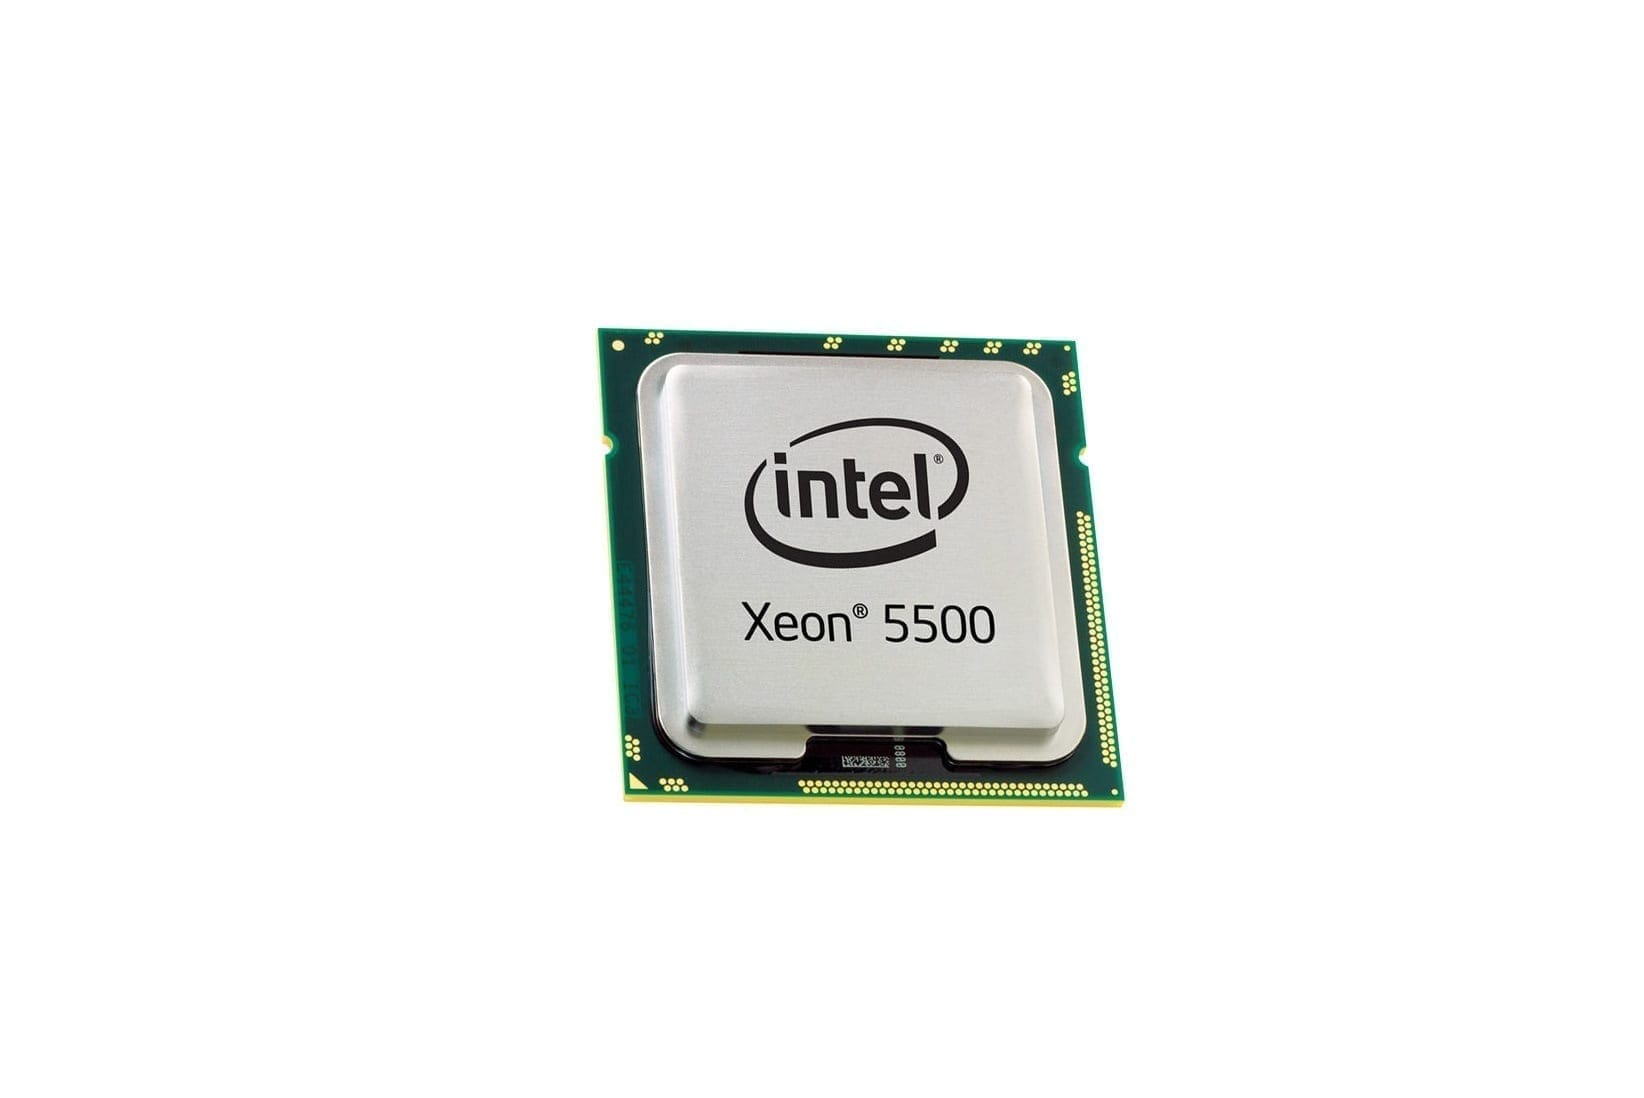 Подобрать процессор intel. Intel Xeon e5530. Intel Xeon Quad-Core e5530. Intel Xeon e5506. Процессор Intel Core 302.